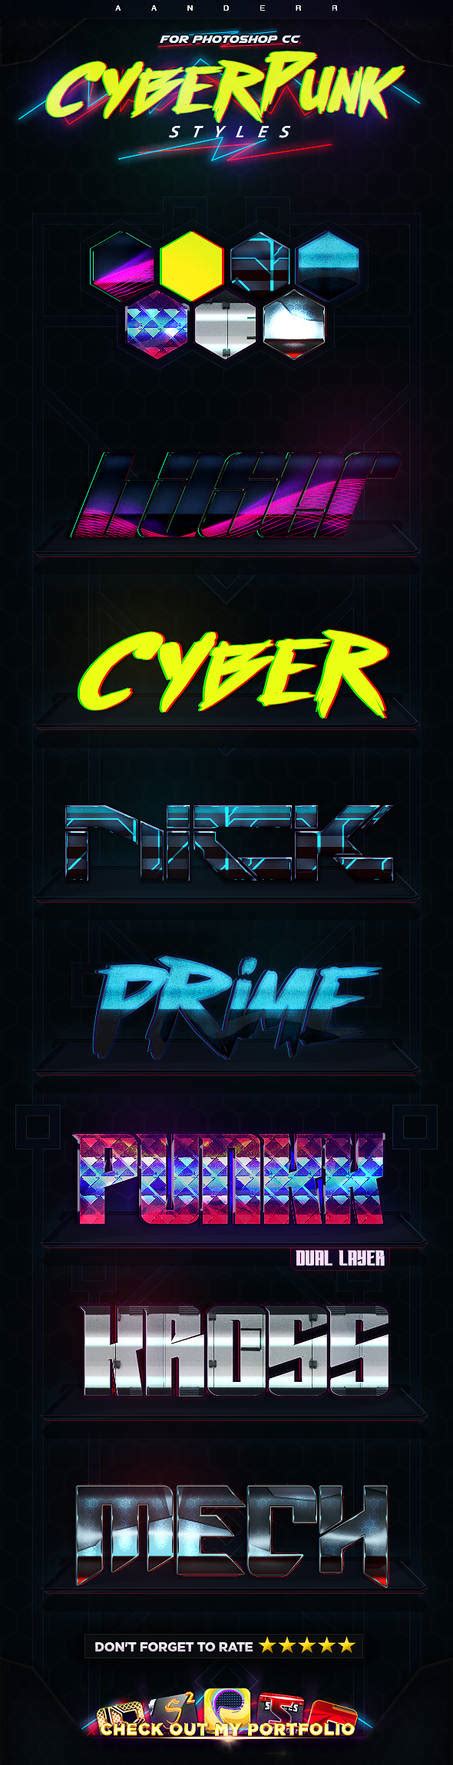 Cyberpunk Photoshop Styles By Aanderr On Deviantart